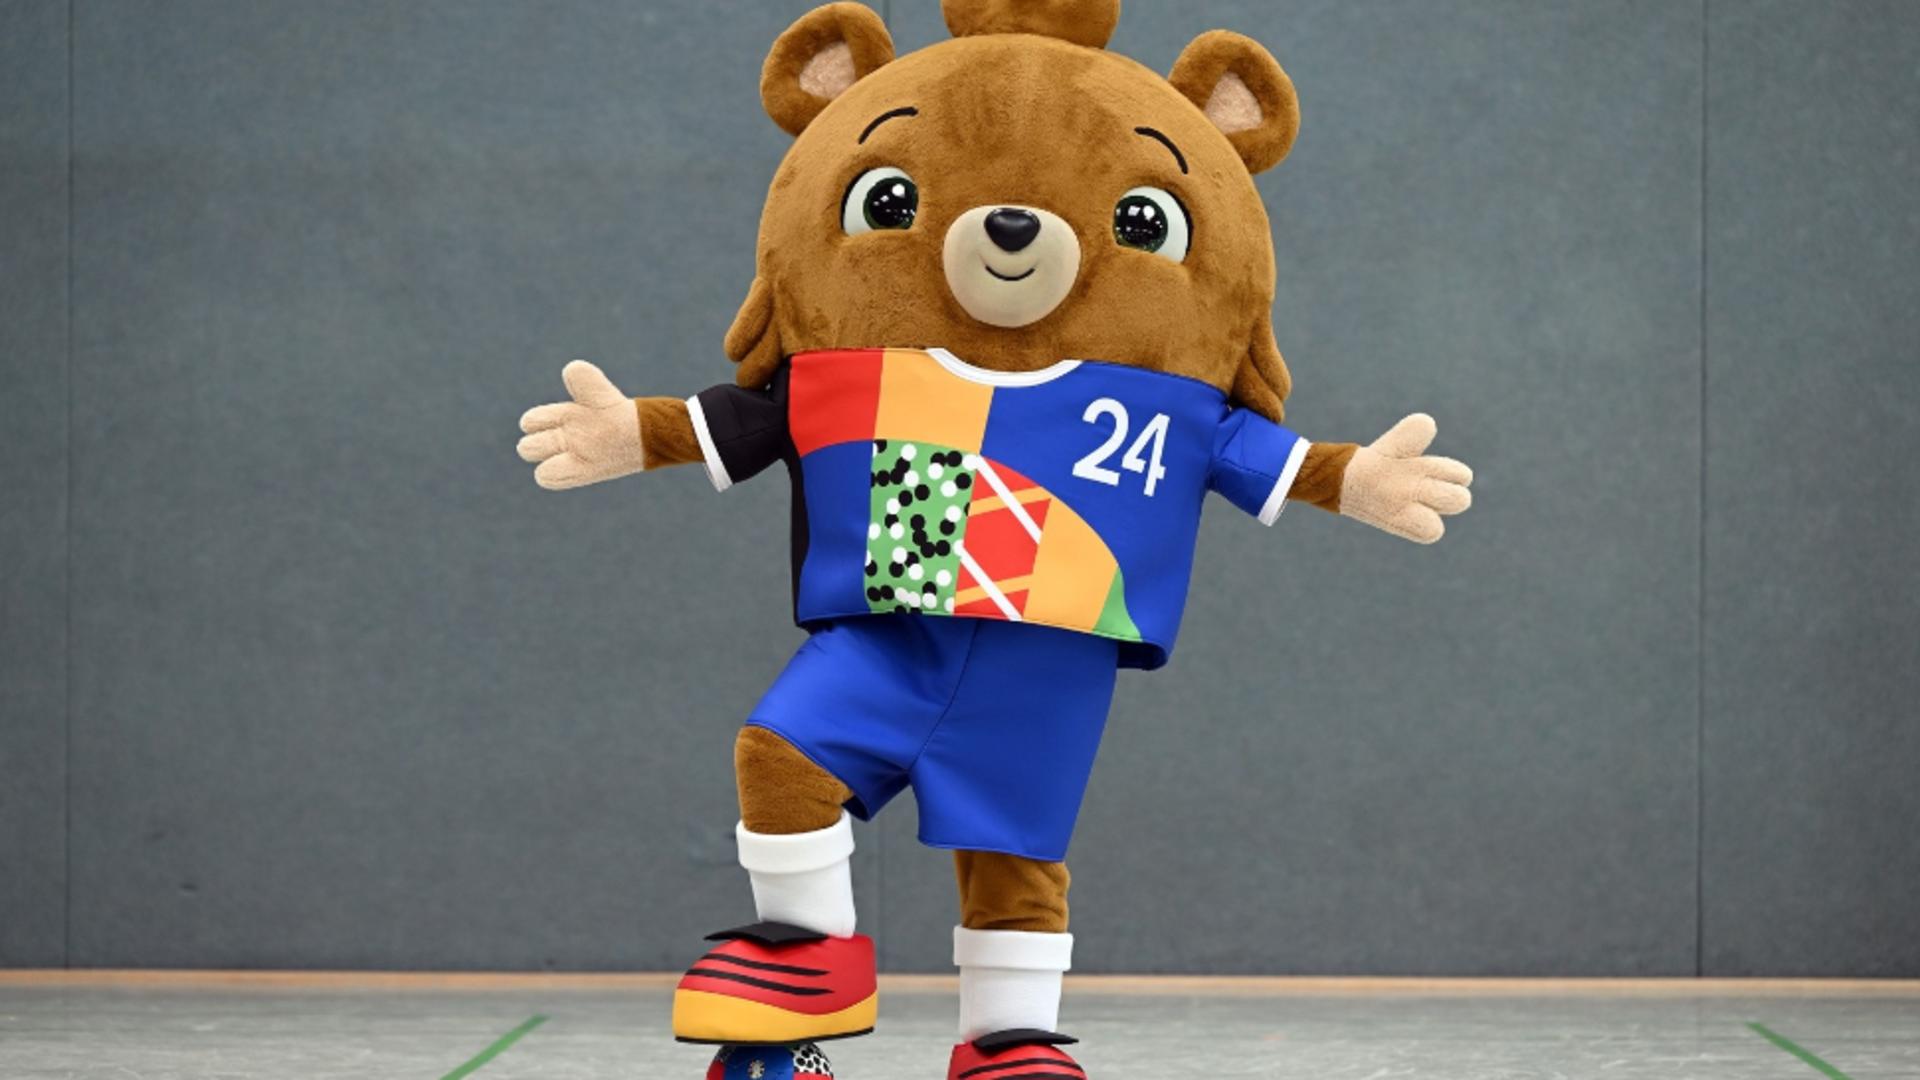 UEFA a prezentat mascota pentru EURO 2024. Ursul fotbalist nu are încă un nume, suporterii sunt invitați să îl „boteze”